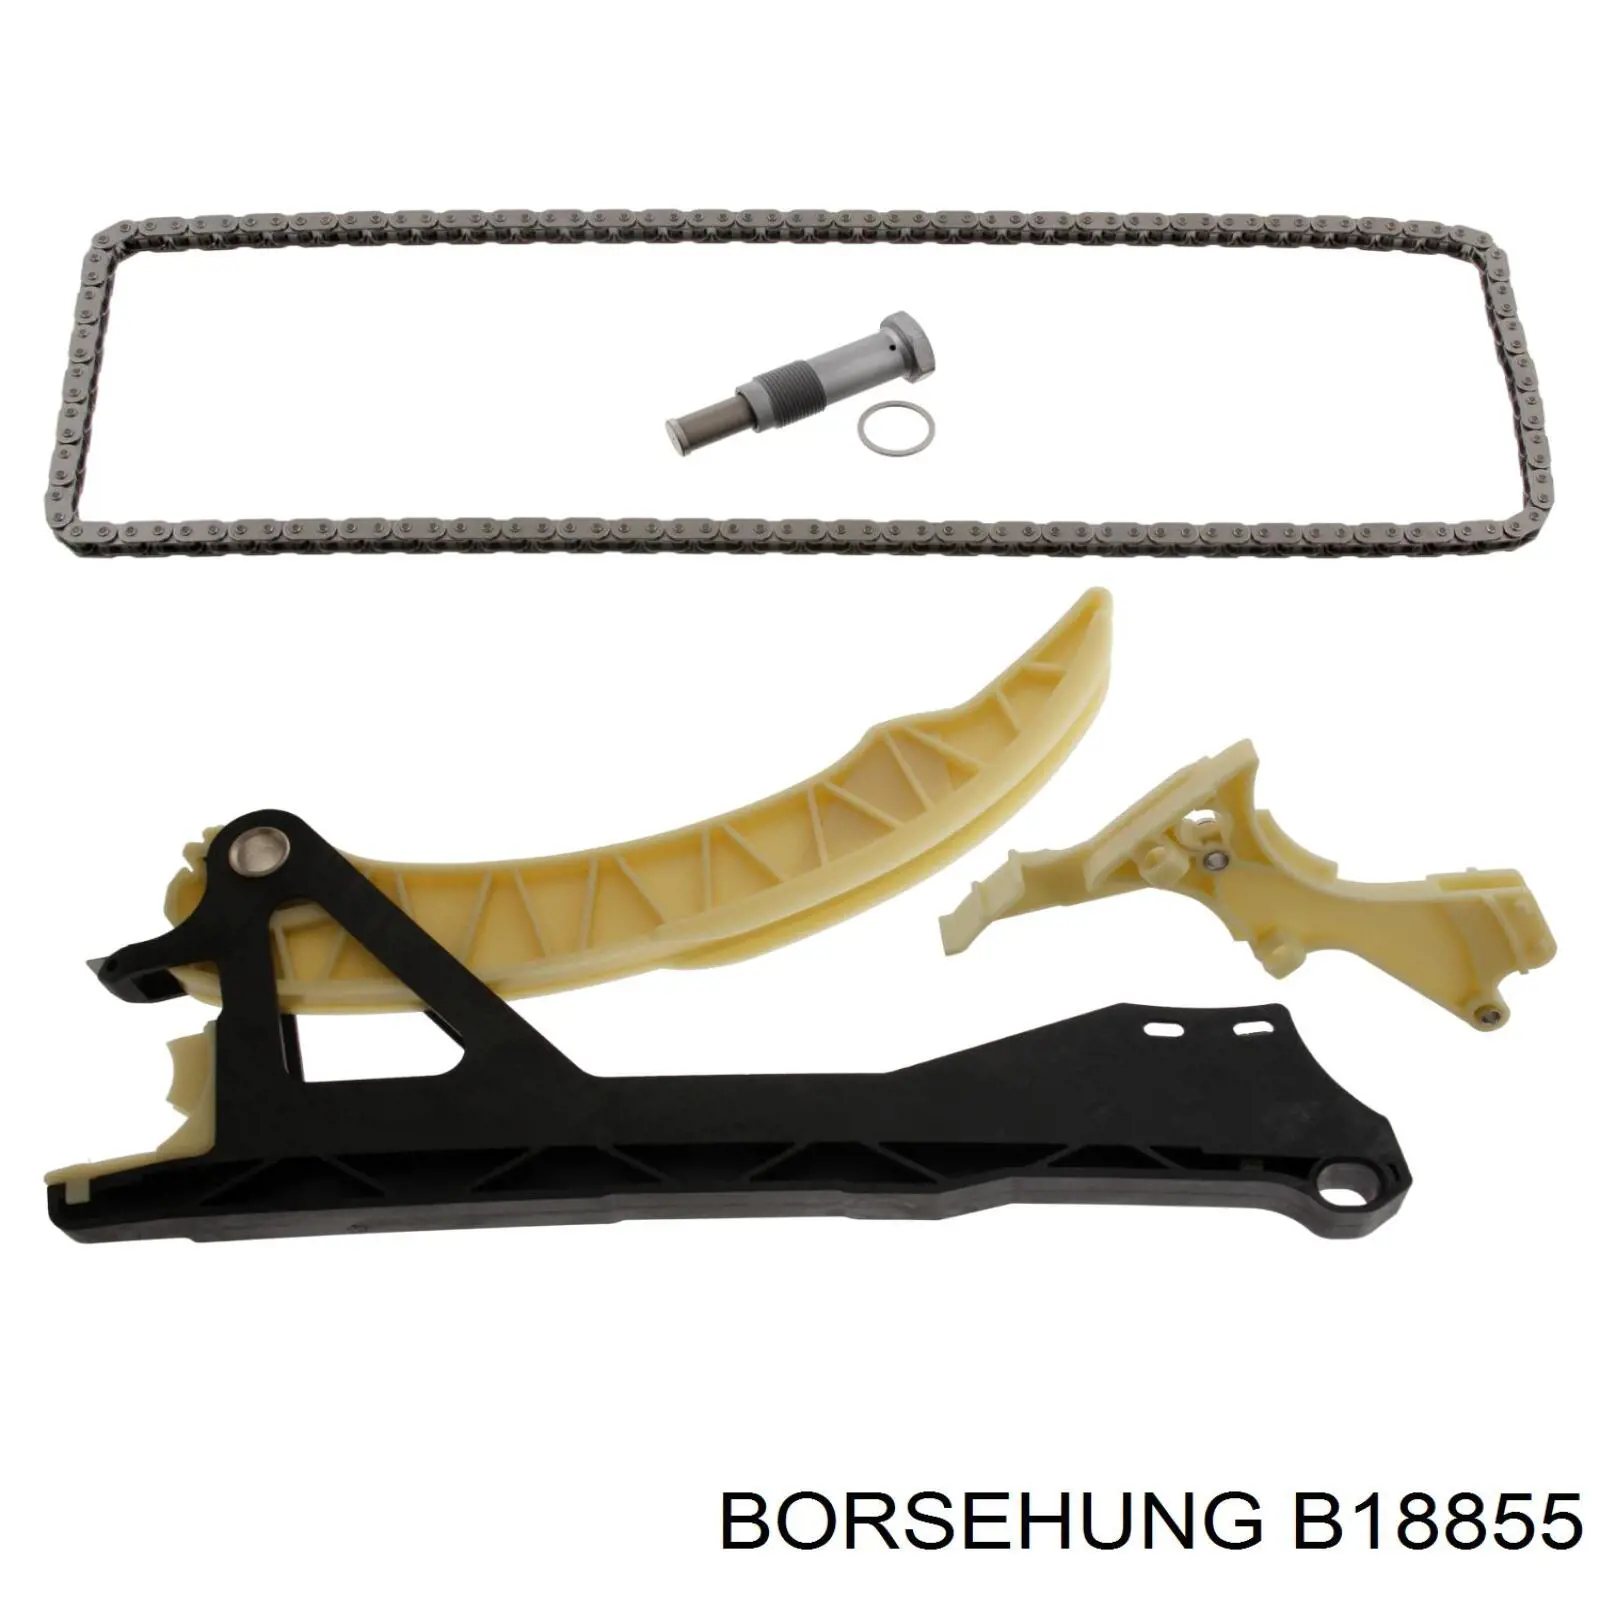 B18855 Borsehung cadeia do mecanismo de distribuição de gás, kit